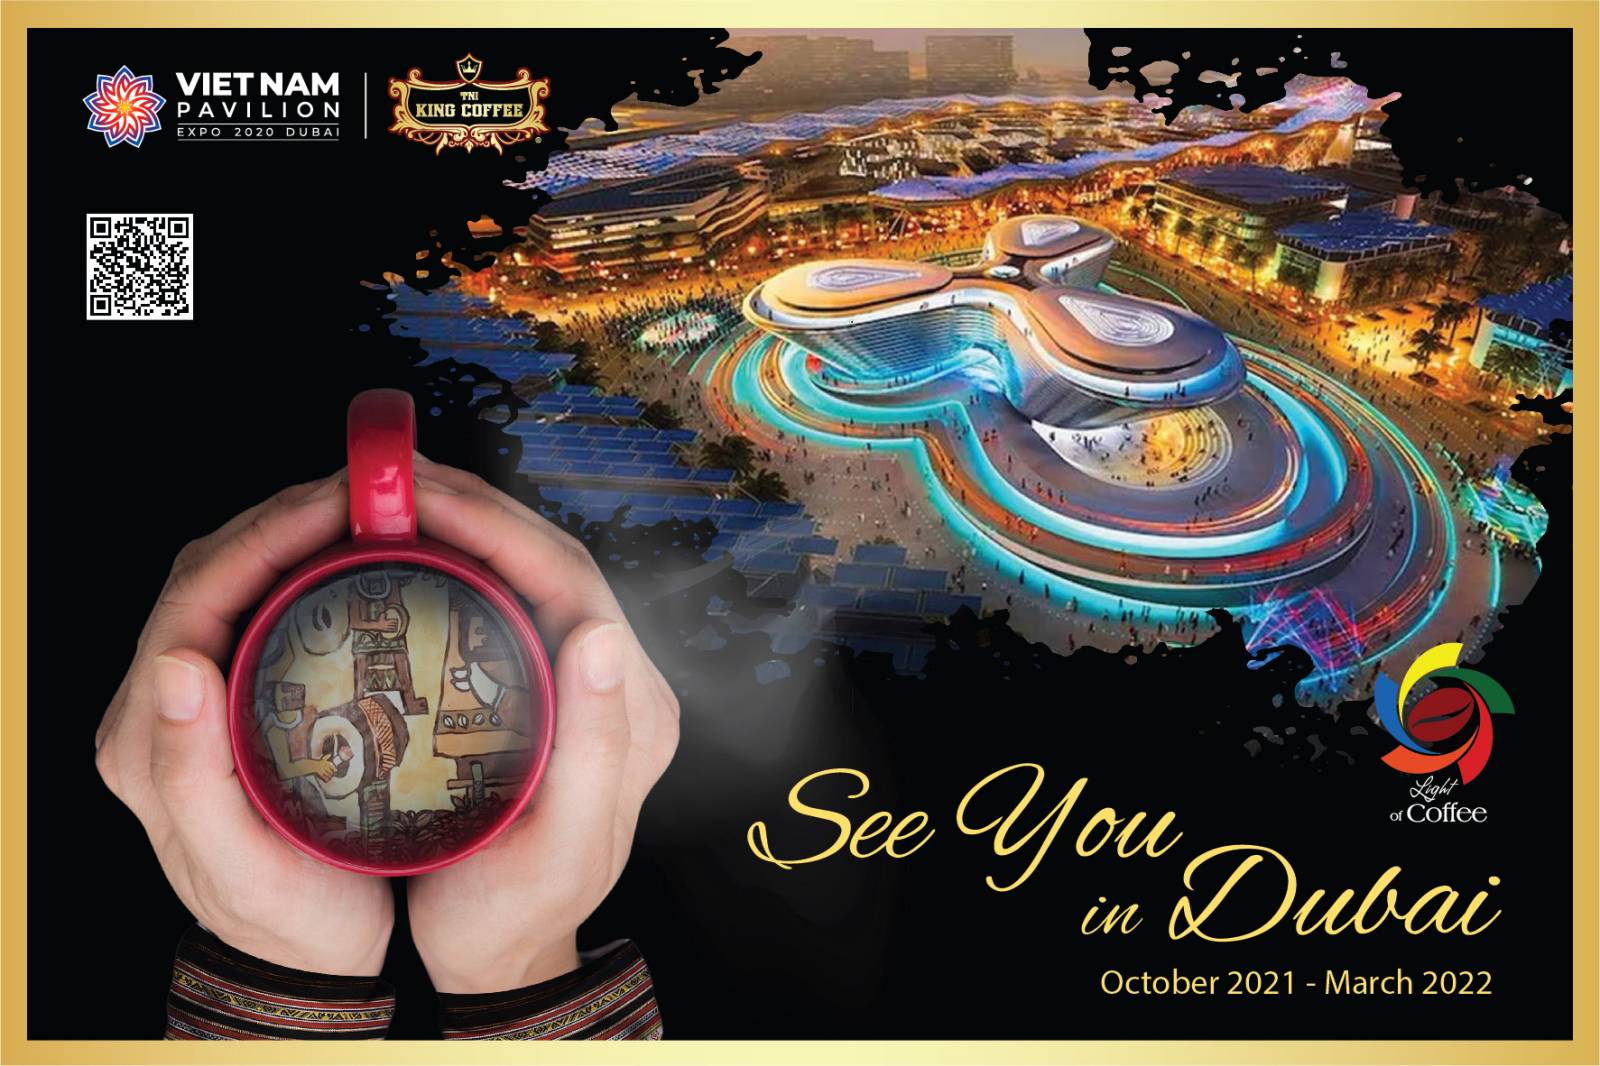 TNI King Coffee thương hiệu cà phê Việt Nam tham gia EXPO 2020 Dubai - Ảnh 2.